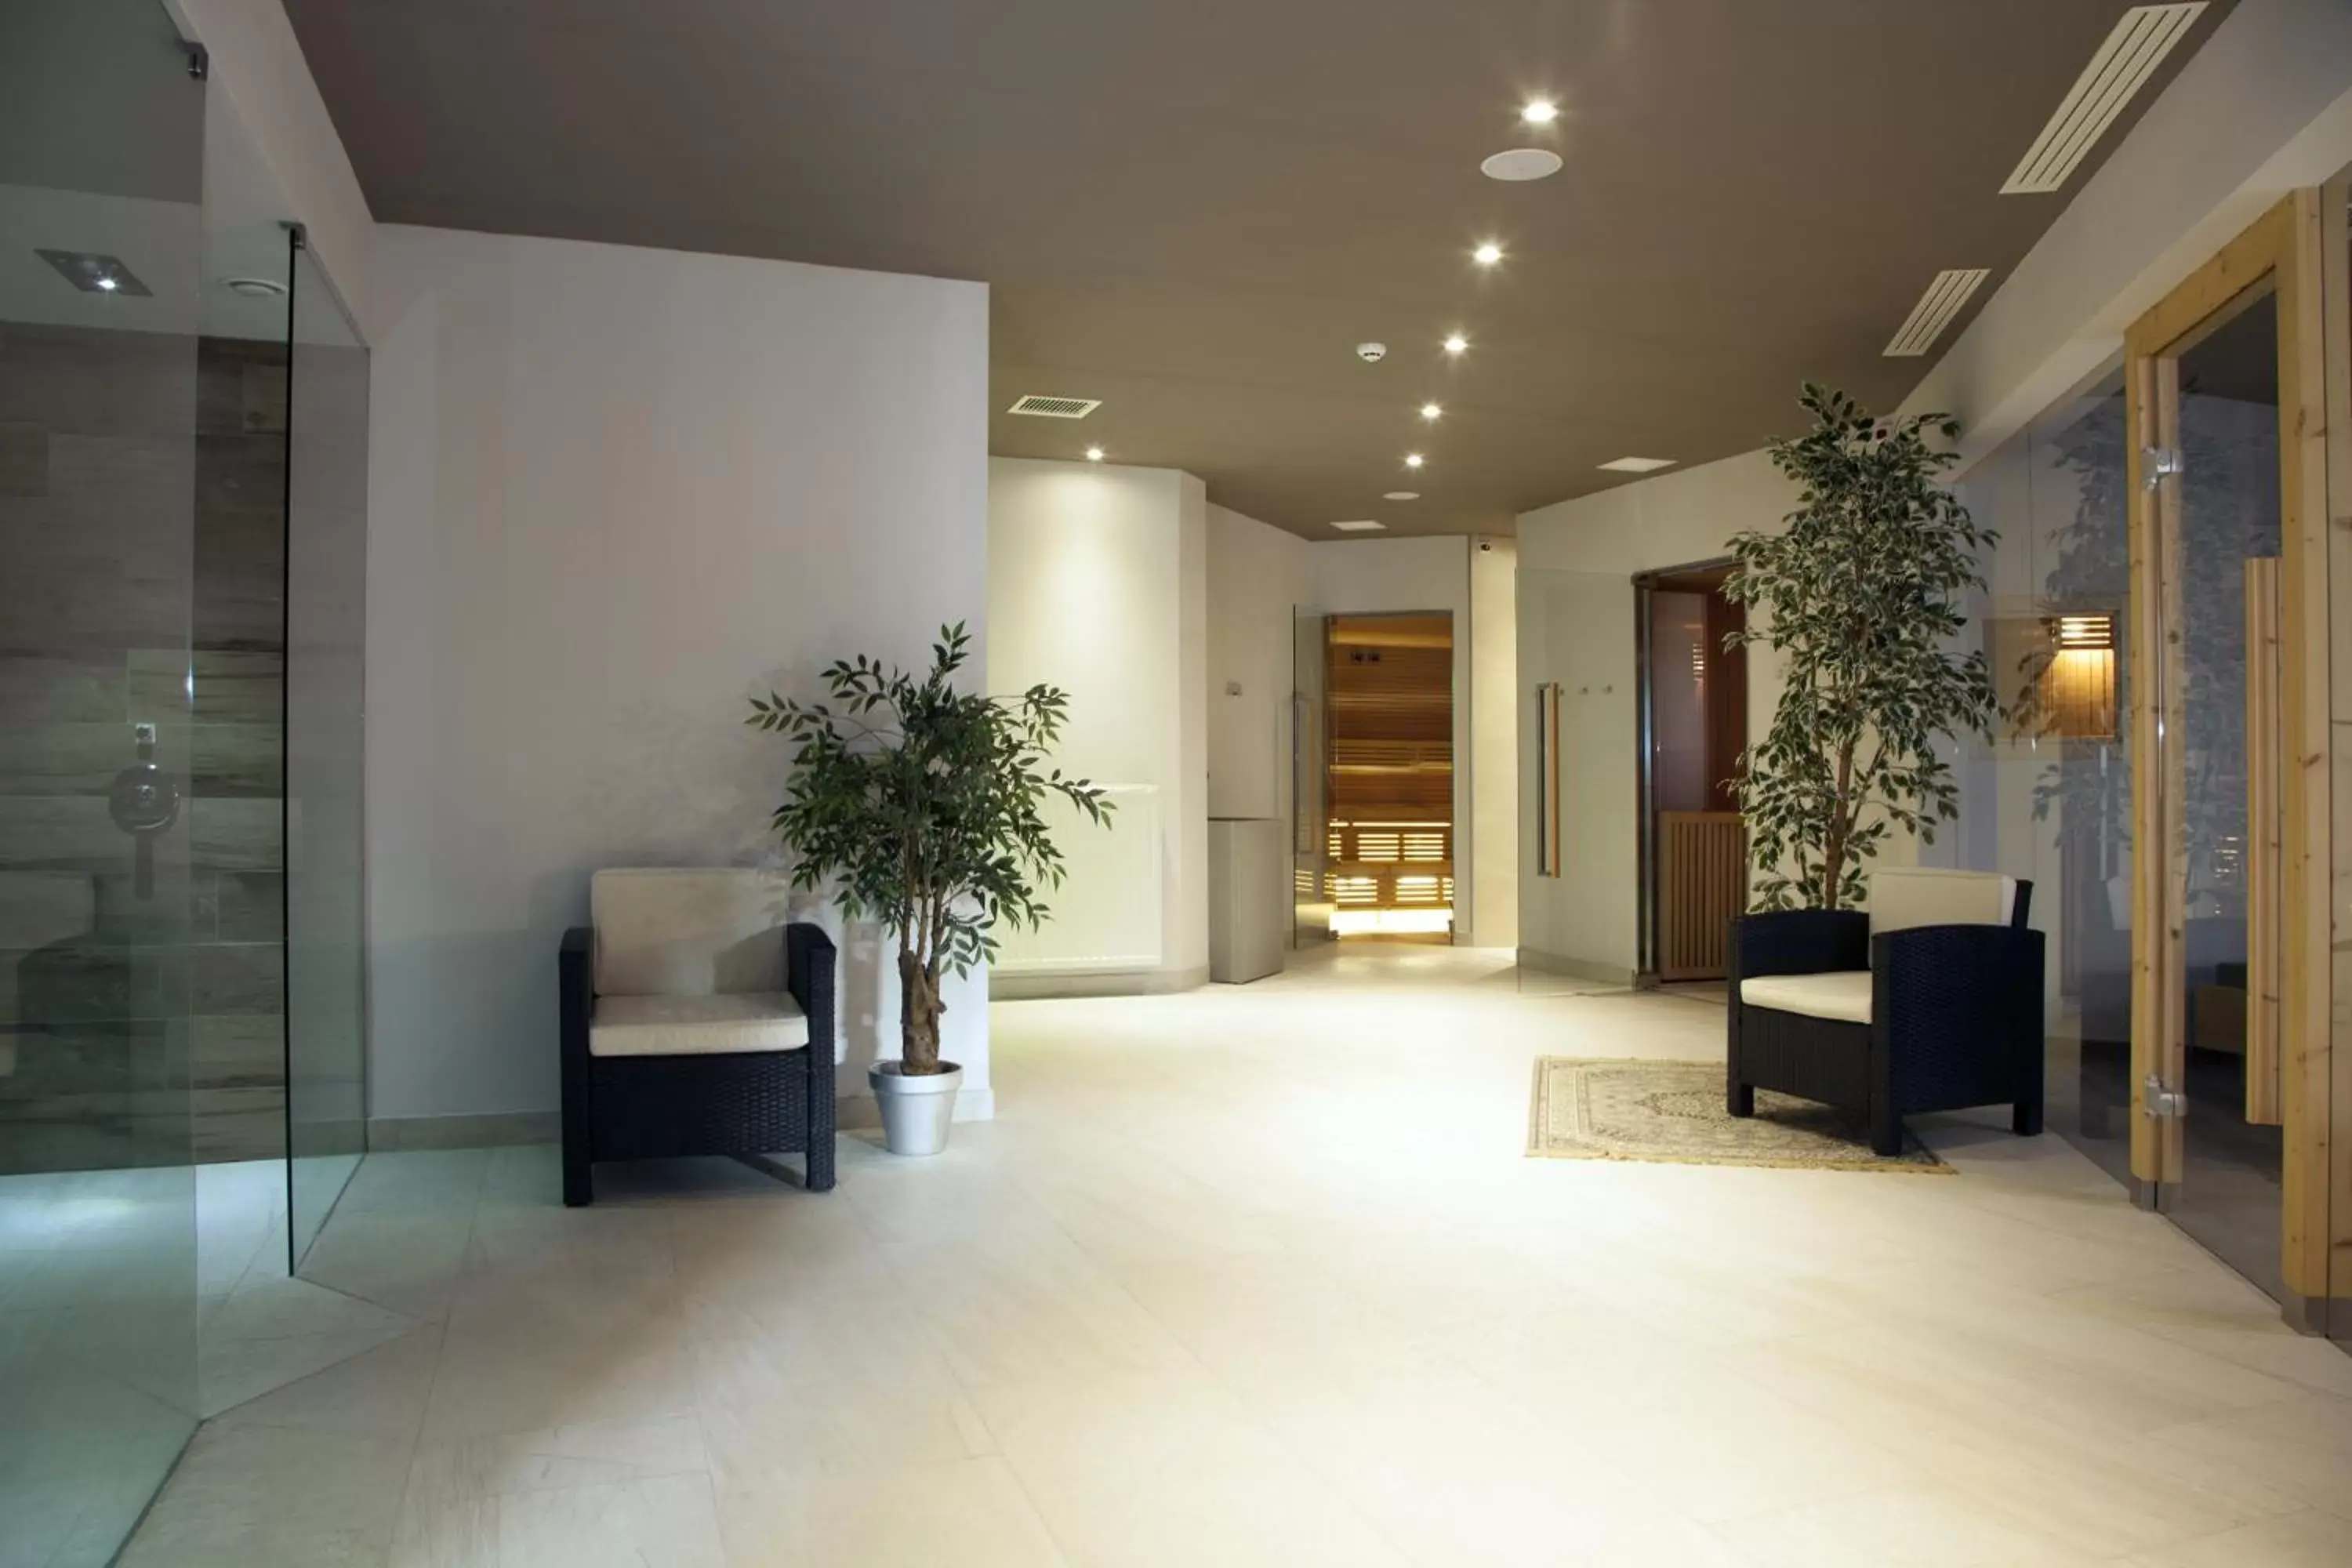 Spa and wellness centre/facilities, Lobby/Reception in Aparthotel Wellness Villa di Bosco